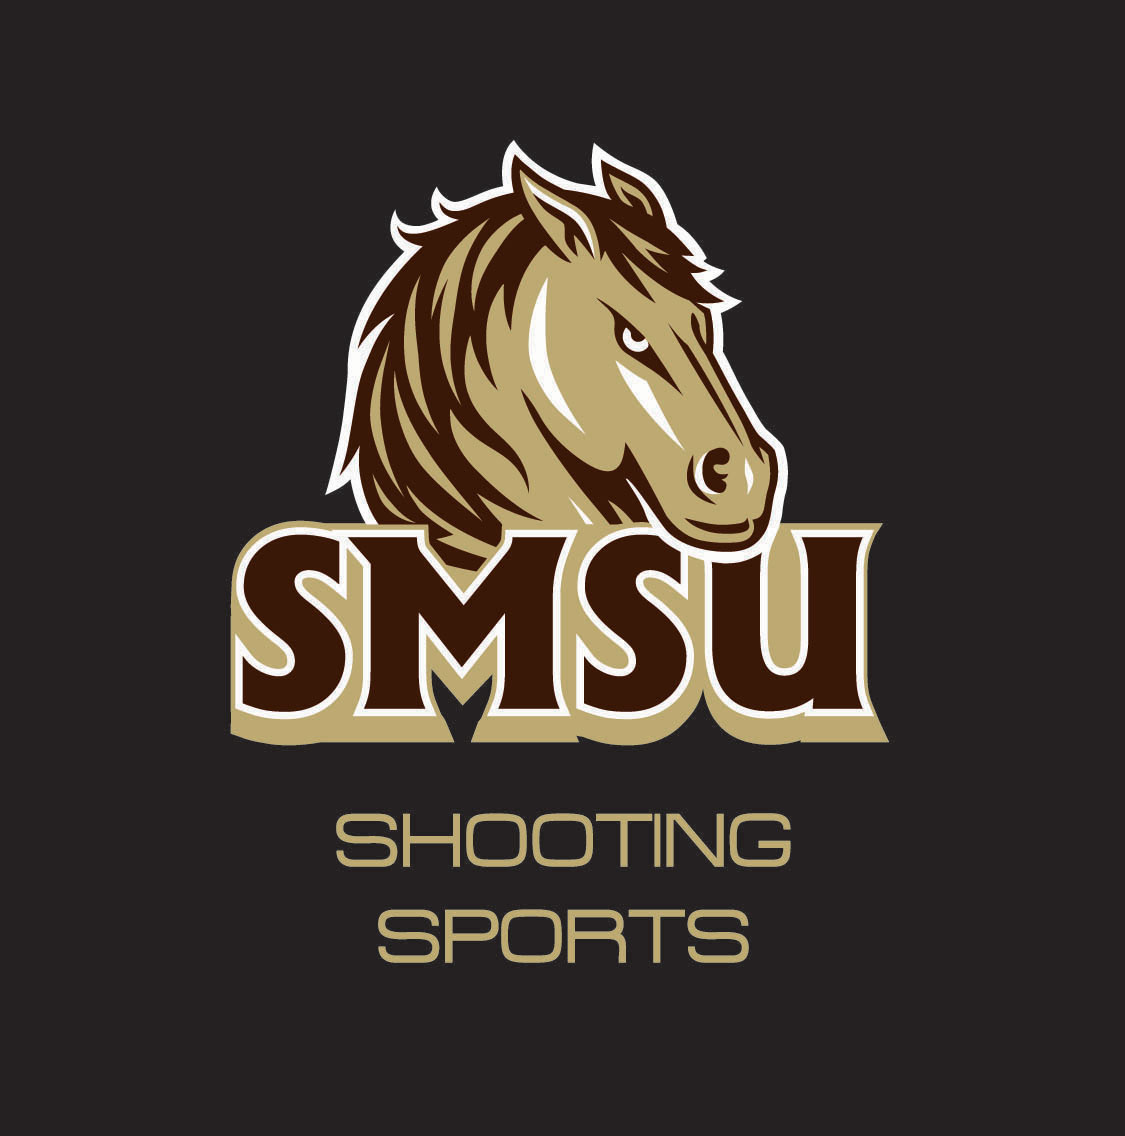 Shooting Sports Club